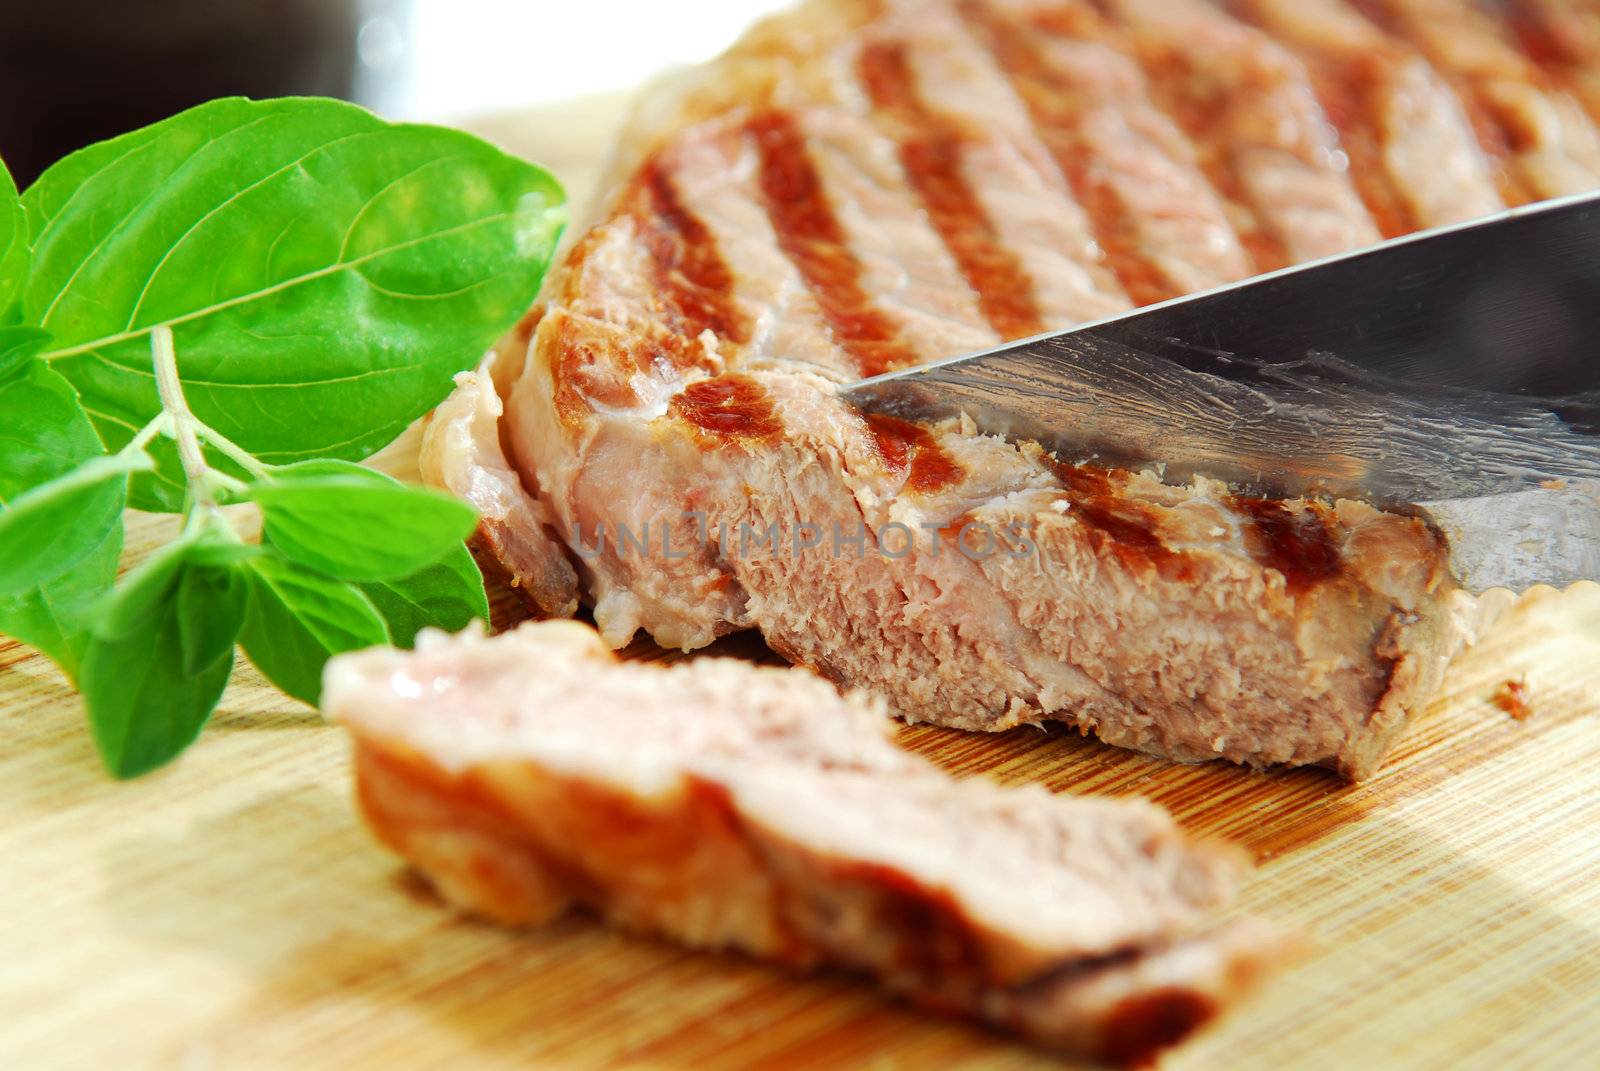 Grilled steak being cut on a cutting board, closeup